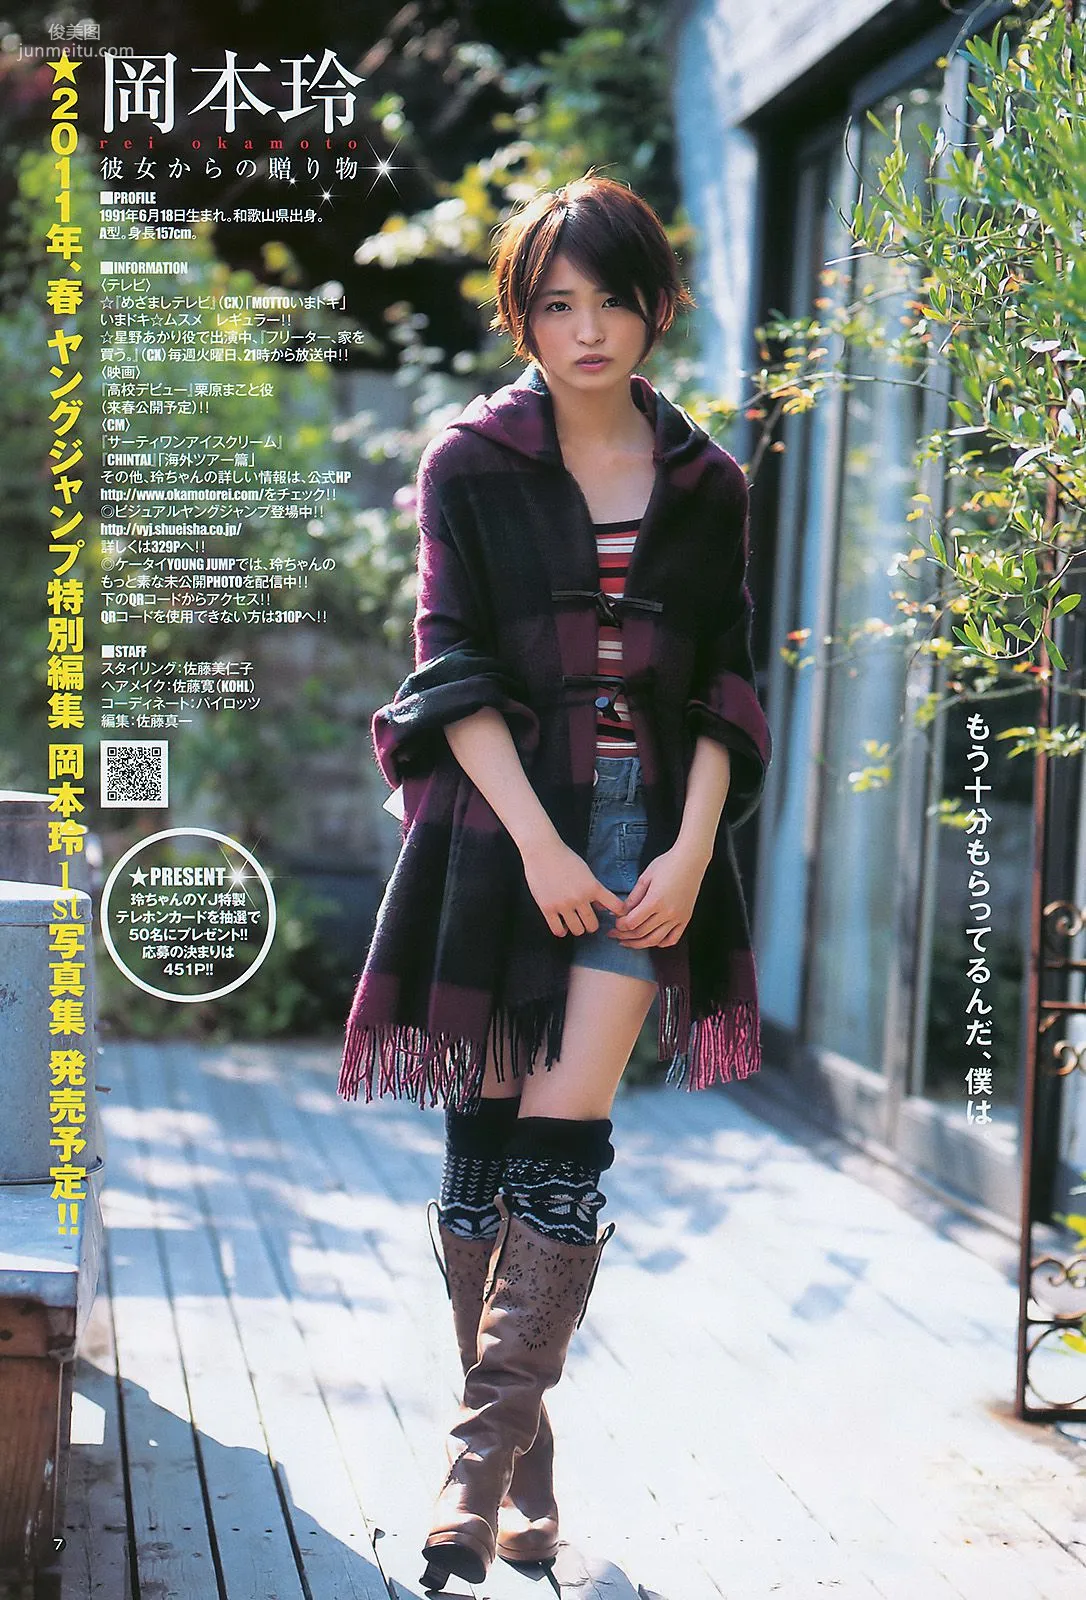 岡本玲 AKB48 [Weekly Young Jump] 2011年No.02 写真杂志8